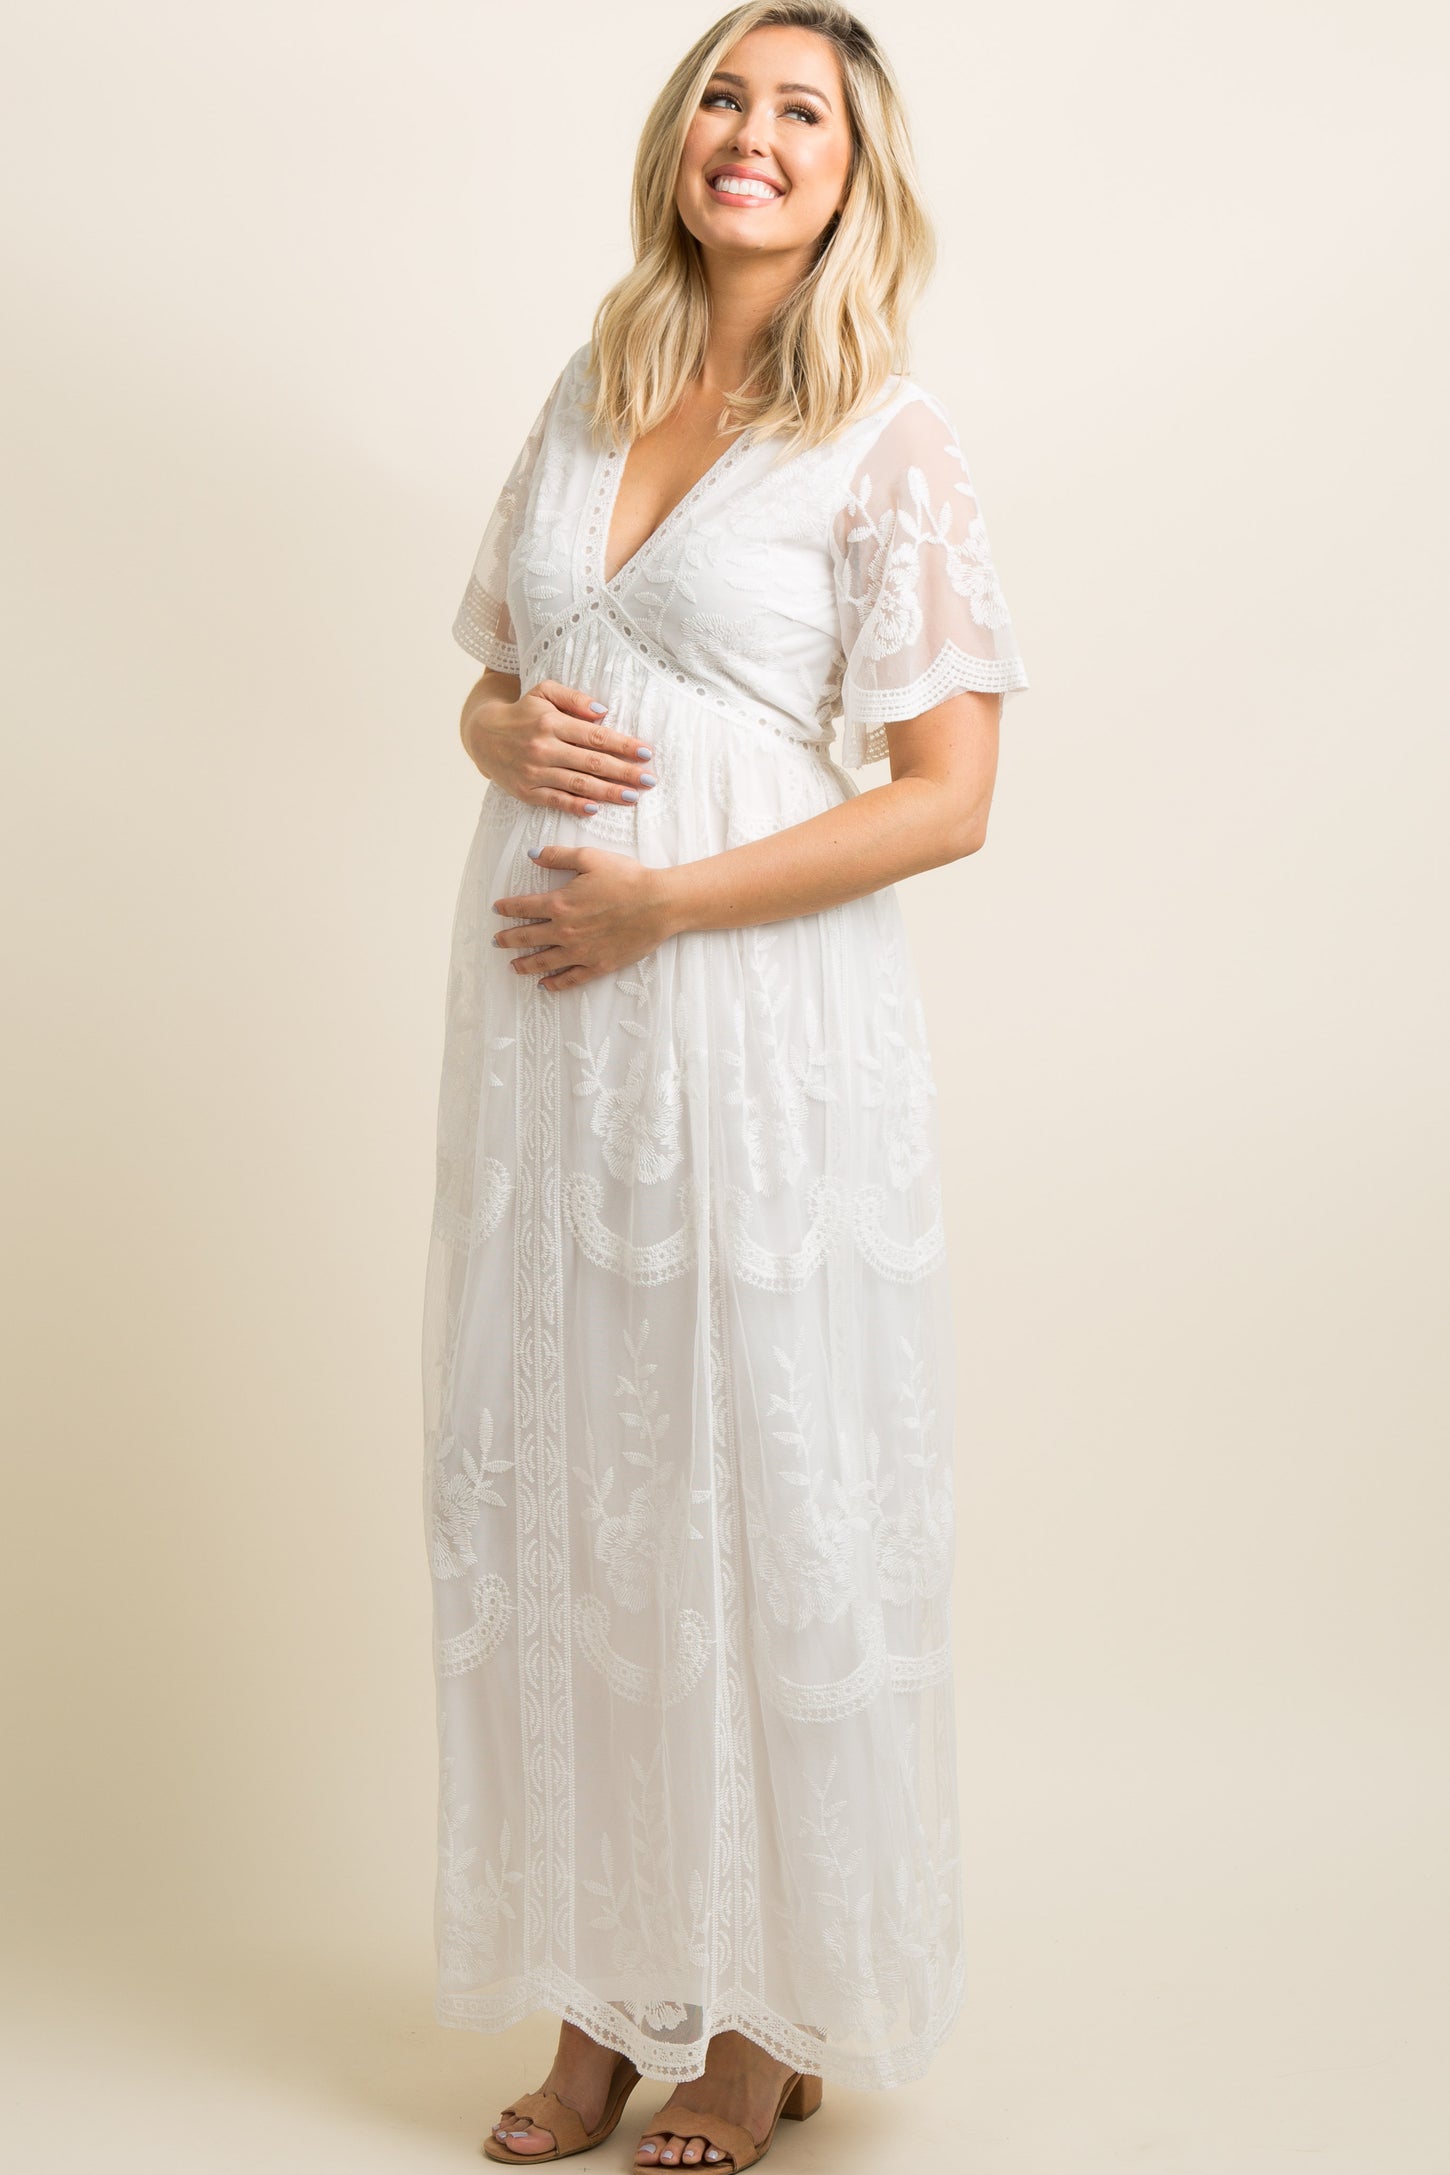 Pinkblush, Dresses, Pinkblush White Lace Mesh Overlay Maternity Maxi Dress